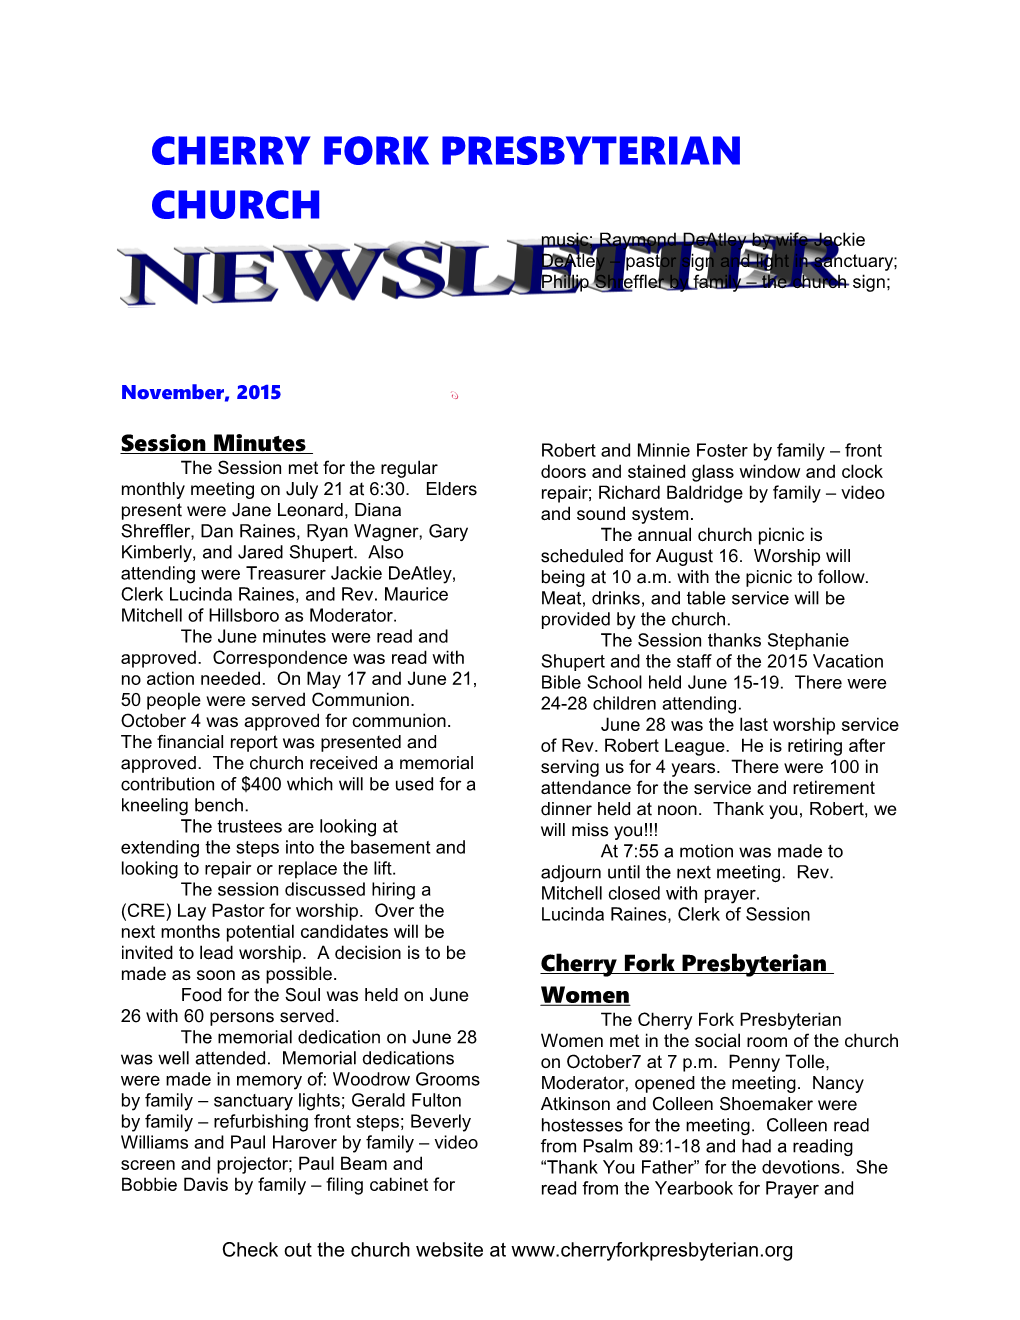 Cherry Fork Presbyterian Church